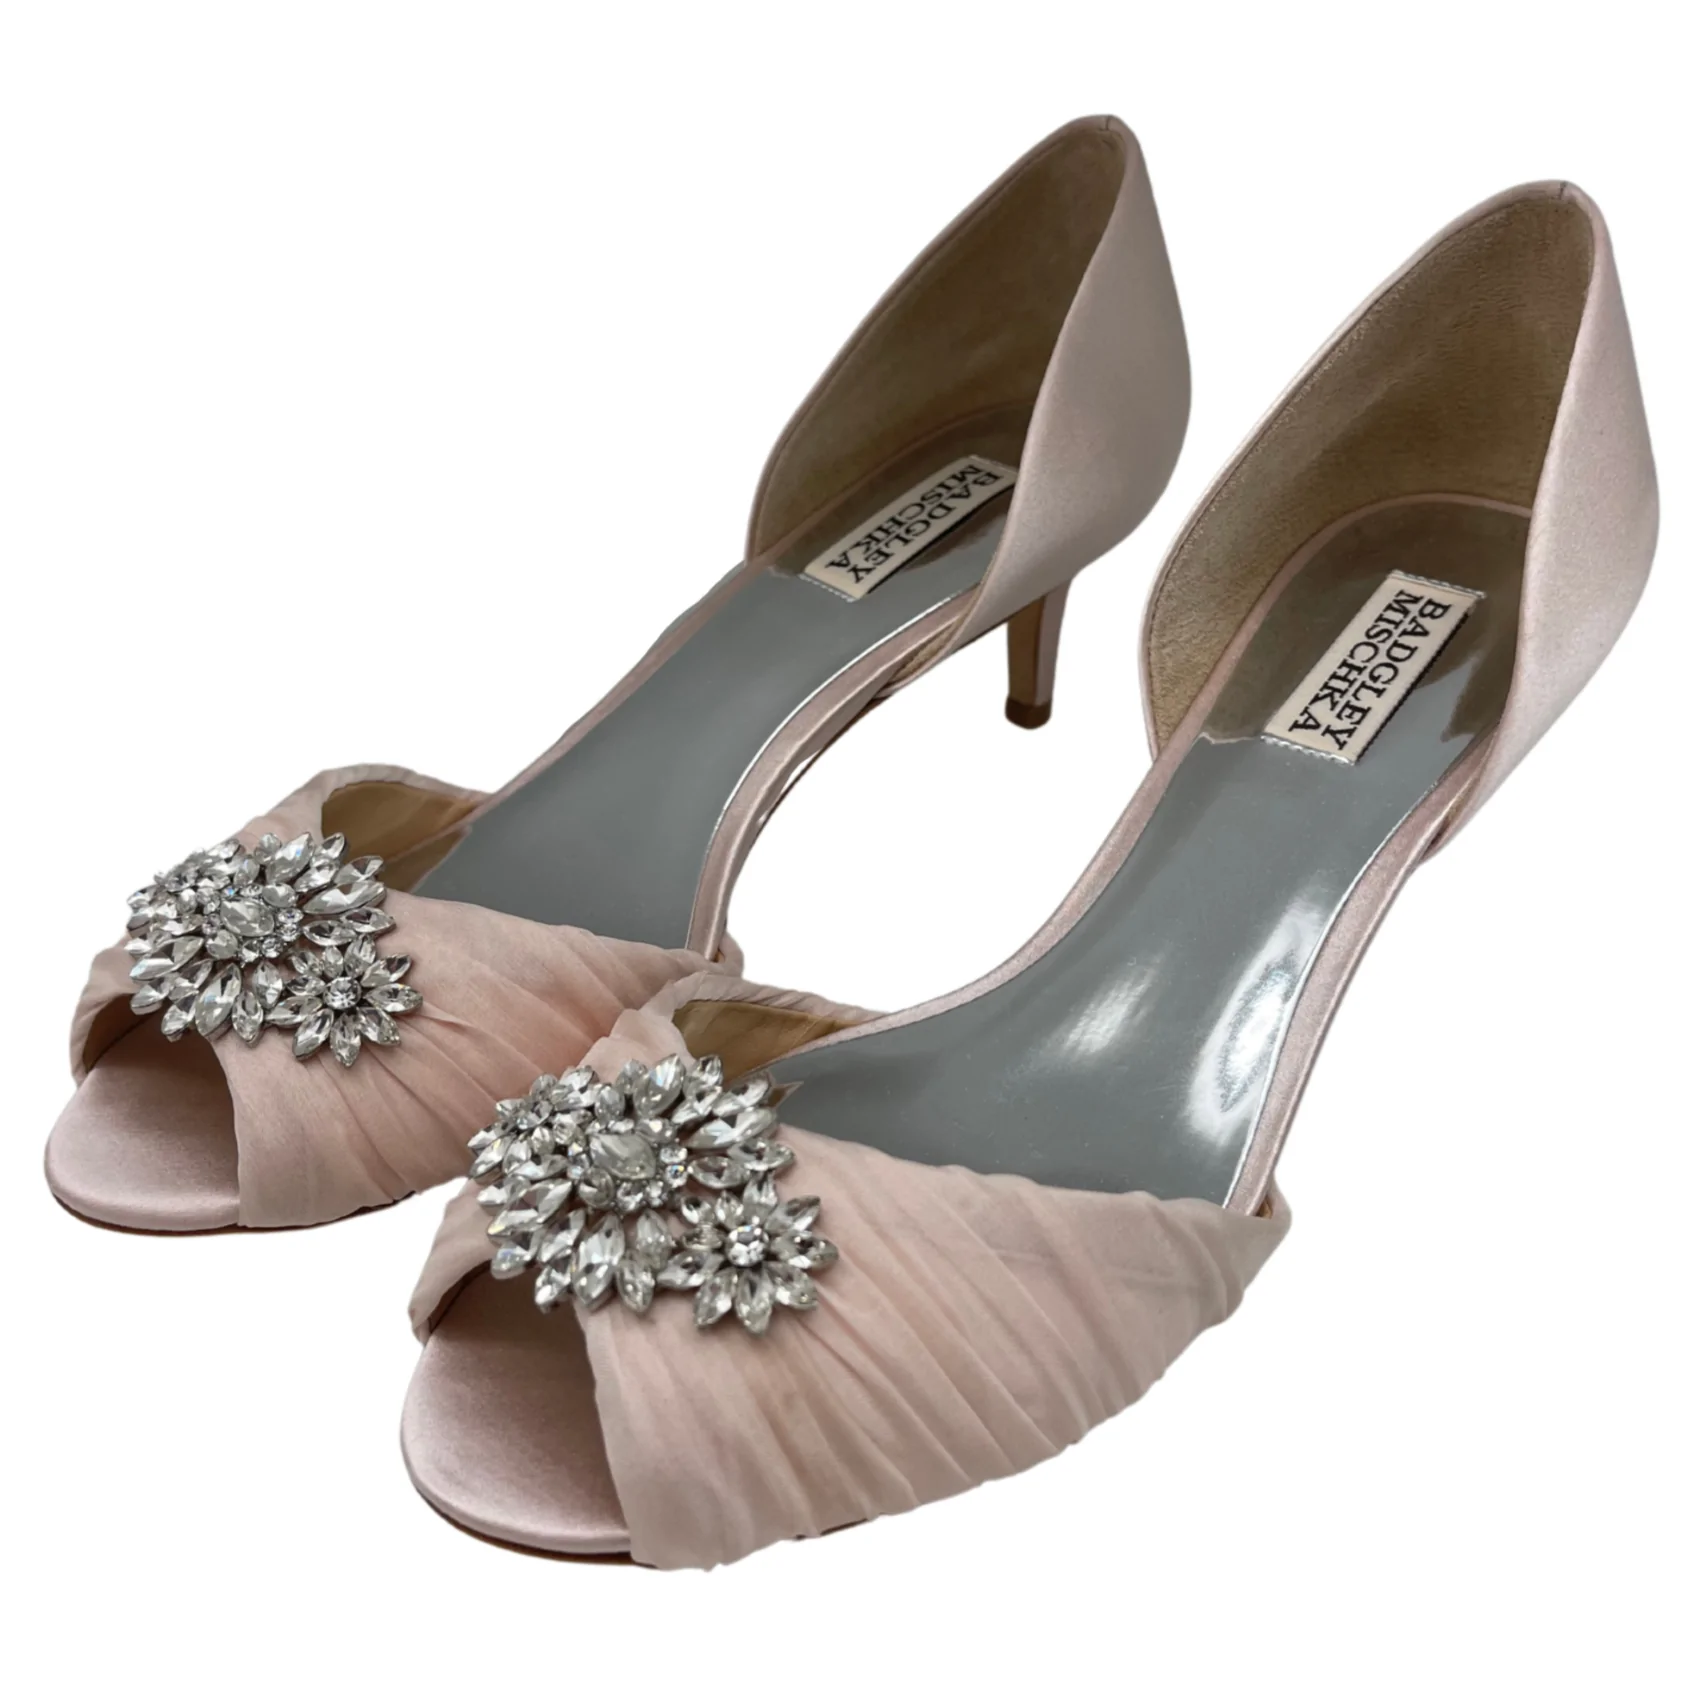 Badgley Mischka Women's Heels / Caitlin / Light Pink with Stones / 2" Heel / Size 9